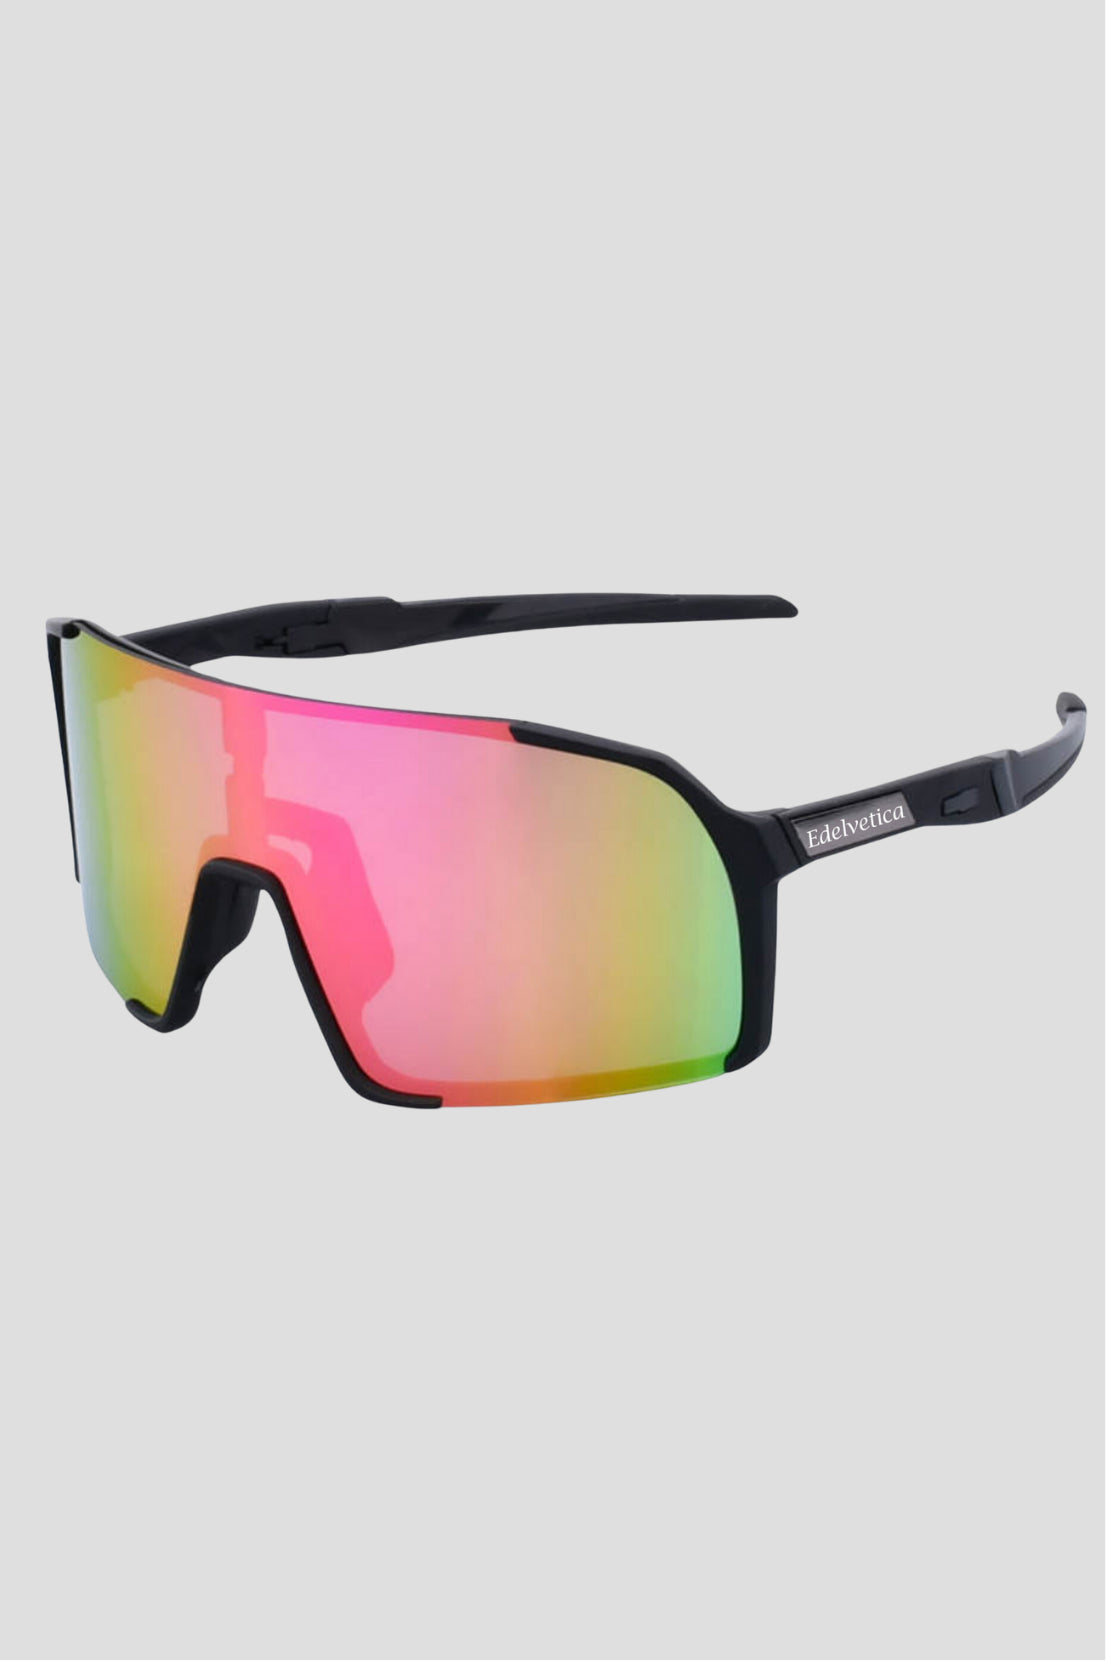 Unisex Sonnenbrille 'Magnum' von Edelvetica, eine robuste und modisch gestaltete Sonnenbrille. Dieses Modell kombiniert einen starken, maskulinen Rahmen mit einem zeitgemäßen Design, ideal für stilbewusste Männer und Frauen. Die Sonnenbrille bietet nicht nur Schutz vor der Sonne, sondern setzt auch ein modisches Statement.